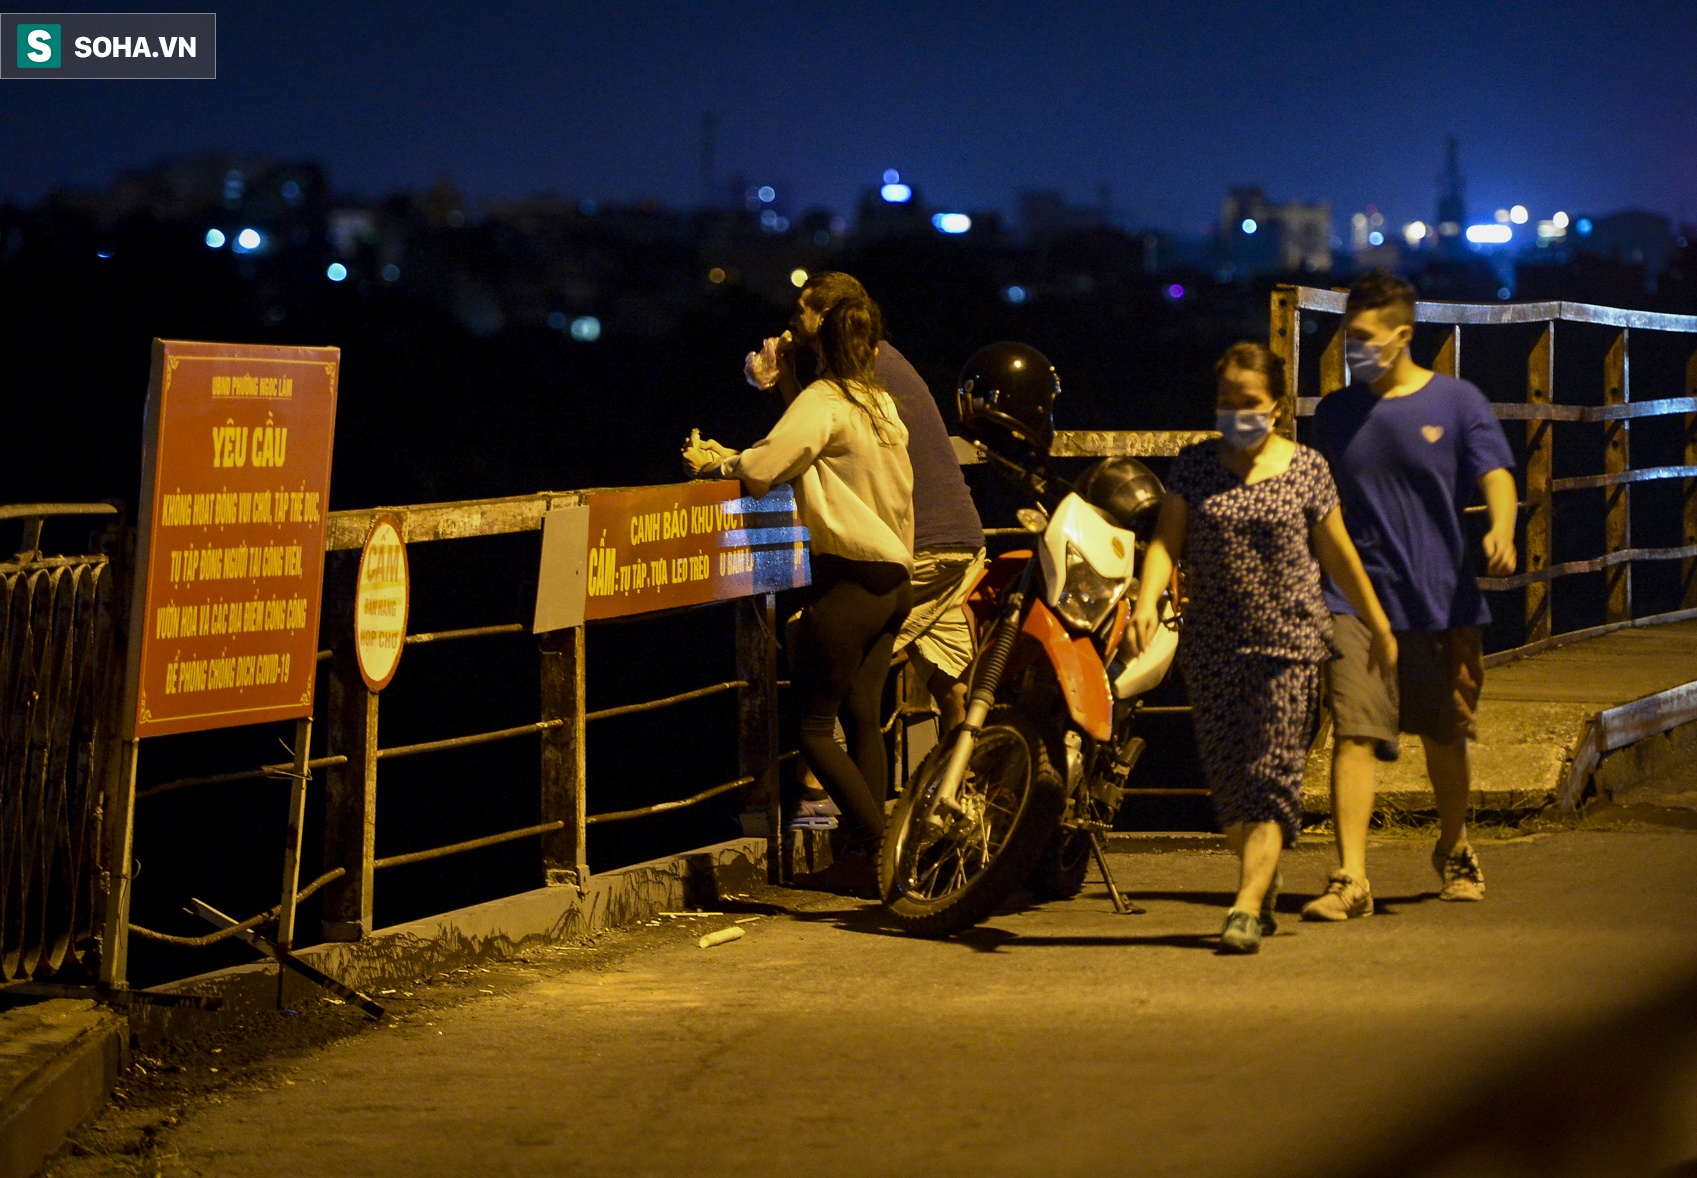 Hà Nội: Nam thanh nữ tú thản nhiên lên cầu Long Biên tâm sự, chụp ảnh, hóng mát bất chấp giãn cách xã hội - Ảnh 13.